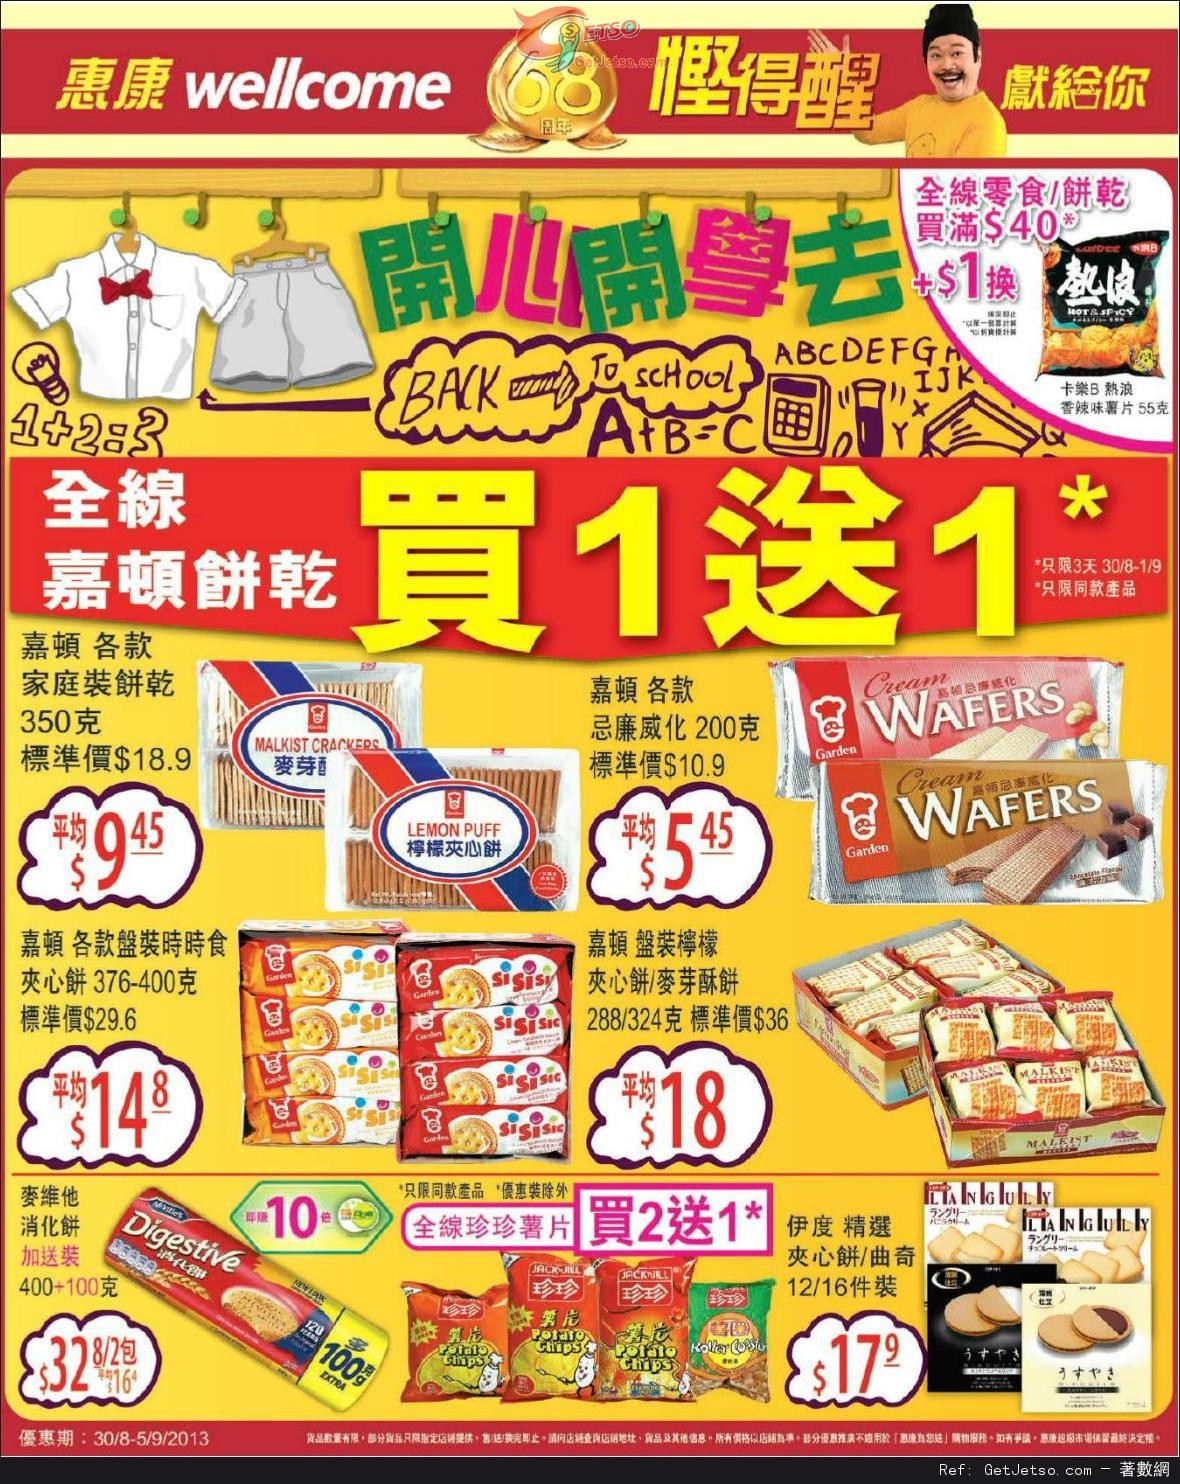 惠康超級市場全線嘉頓餅乾買1送1優惠(至13年9月1日)圖片1